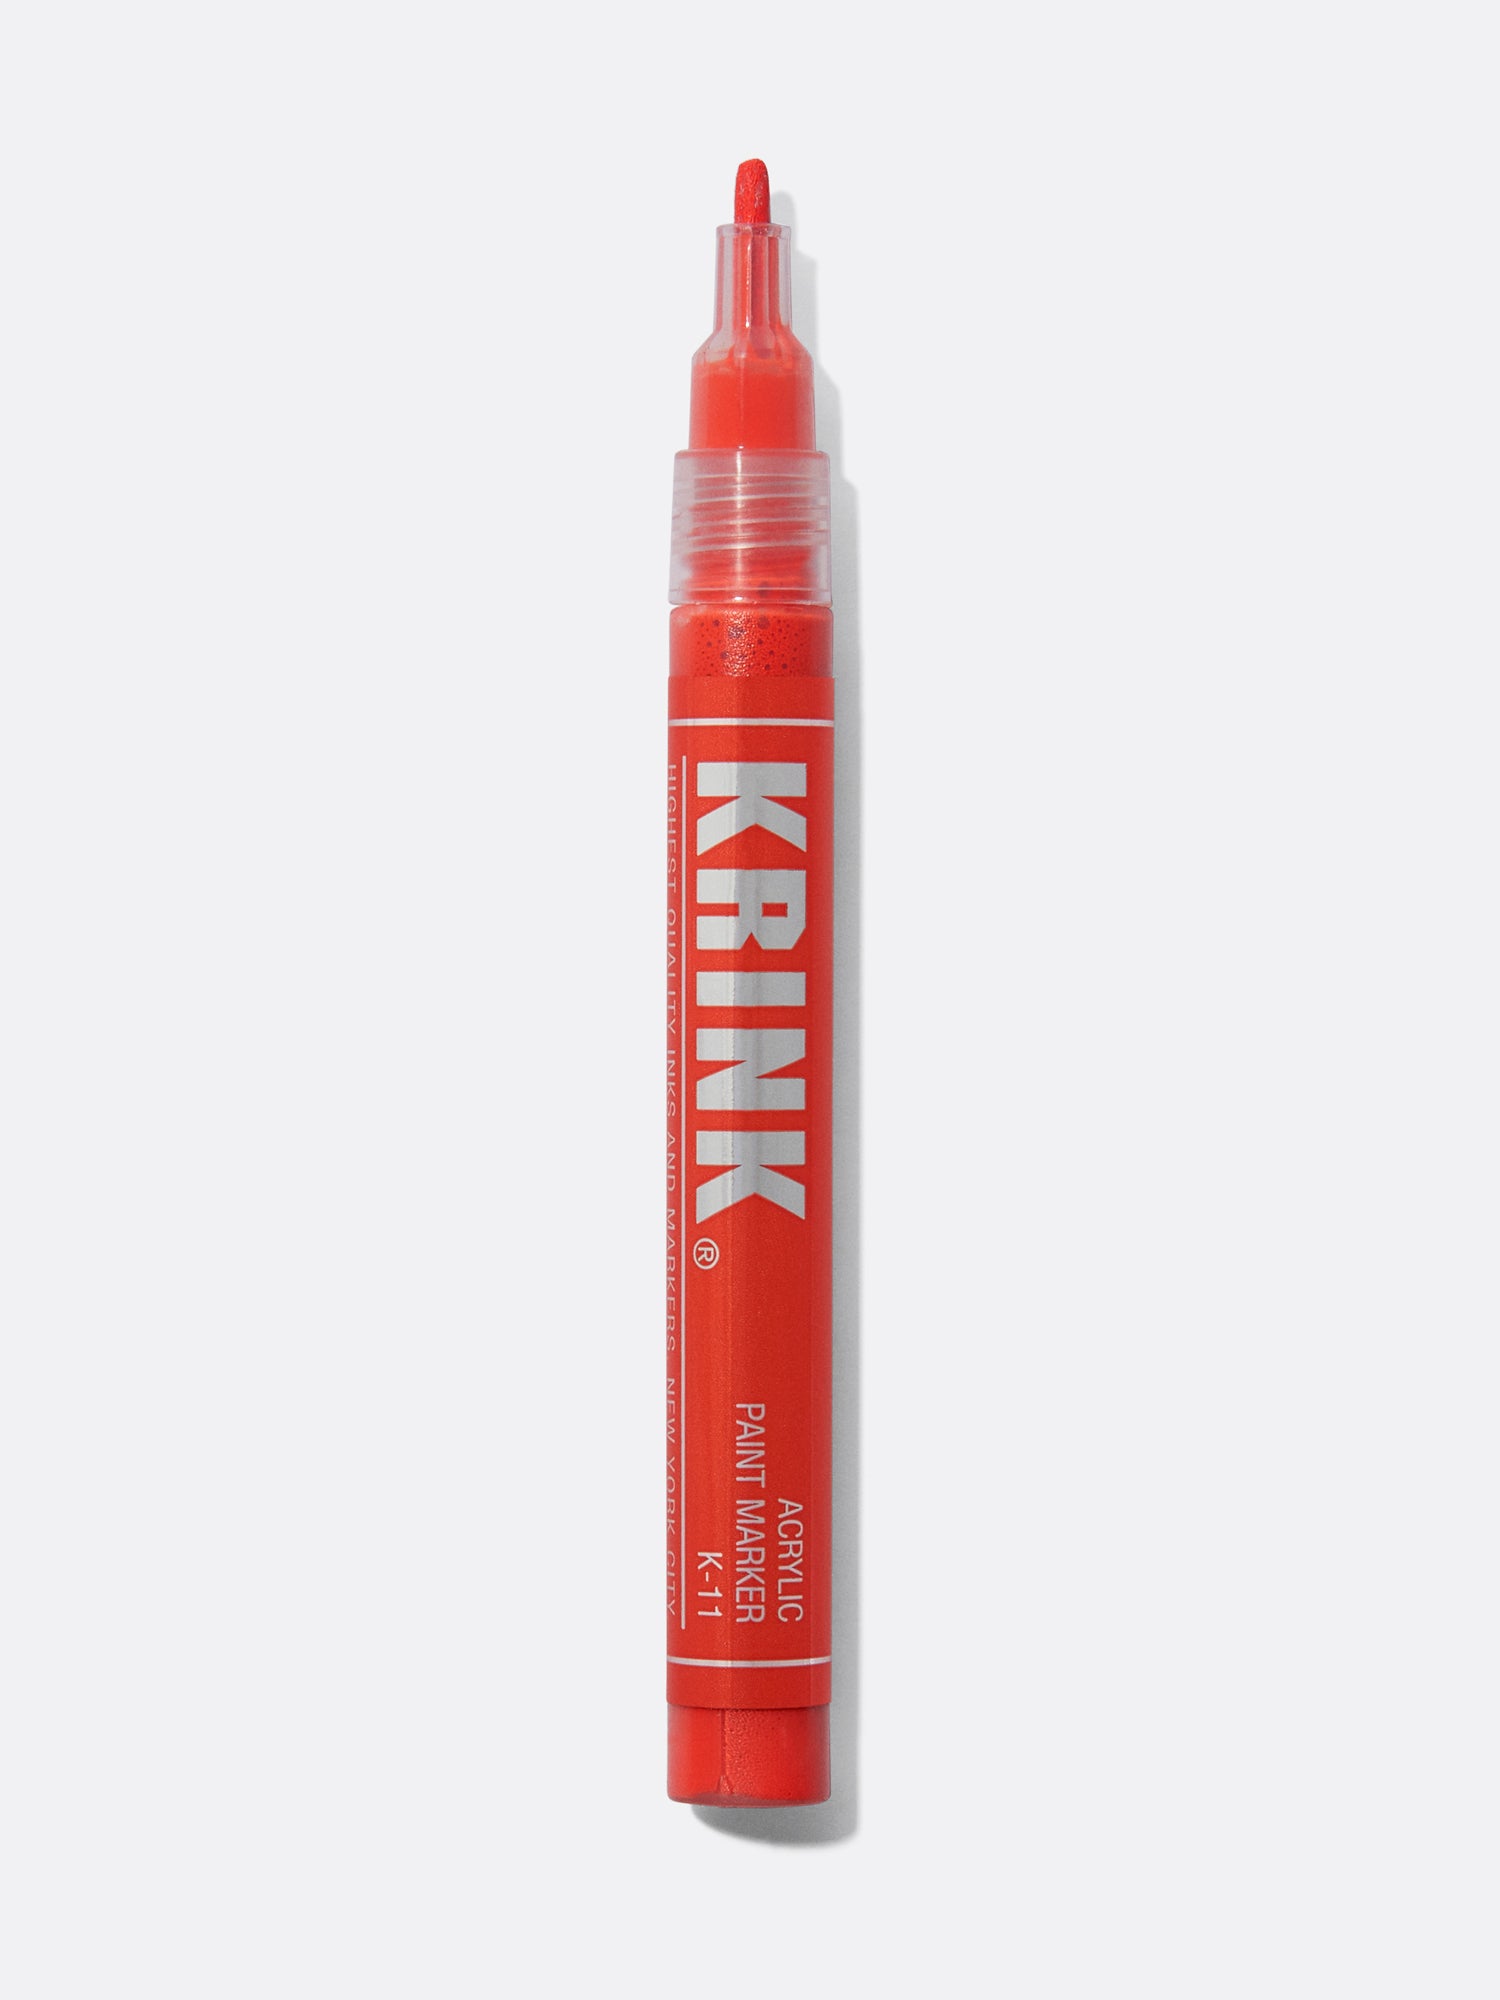 Krink K-11 Acrylic Paint Marker 3 mm Blue